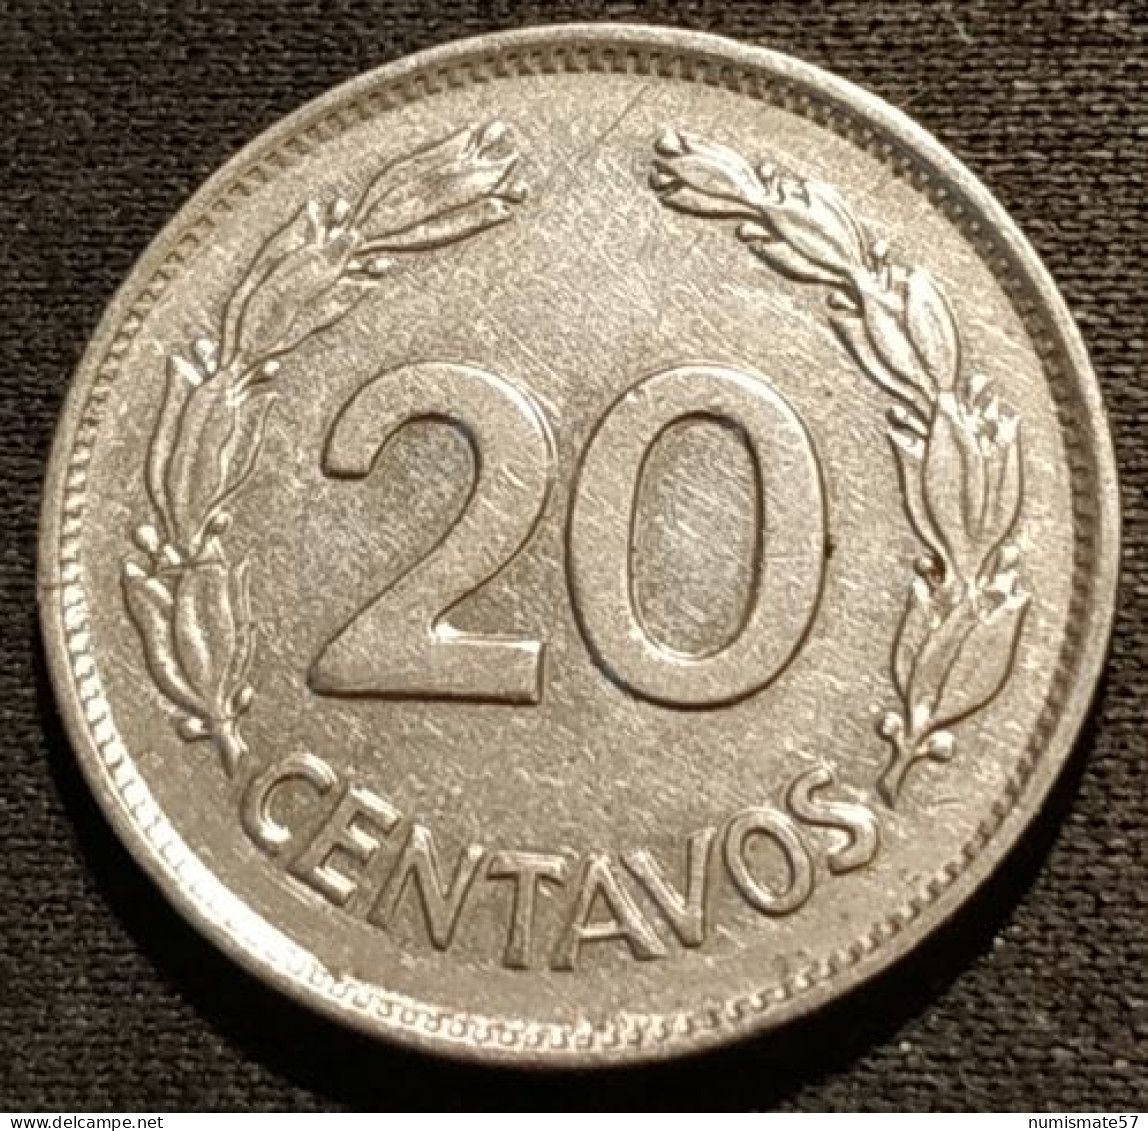 EQUATEUR - EQUATOR - 20 CENTAVOS 1966 - KM 77.1c - Ecuador - Ecuador